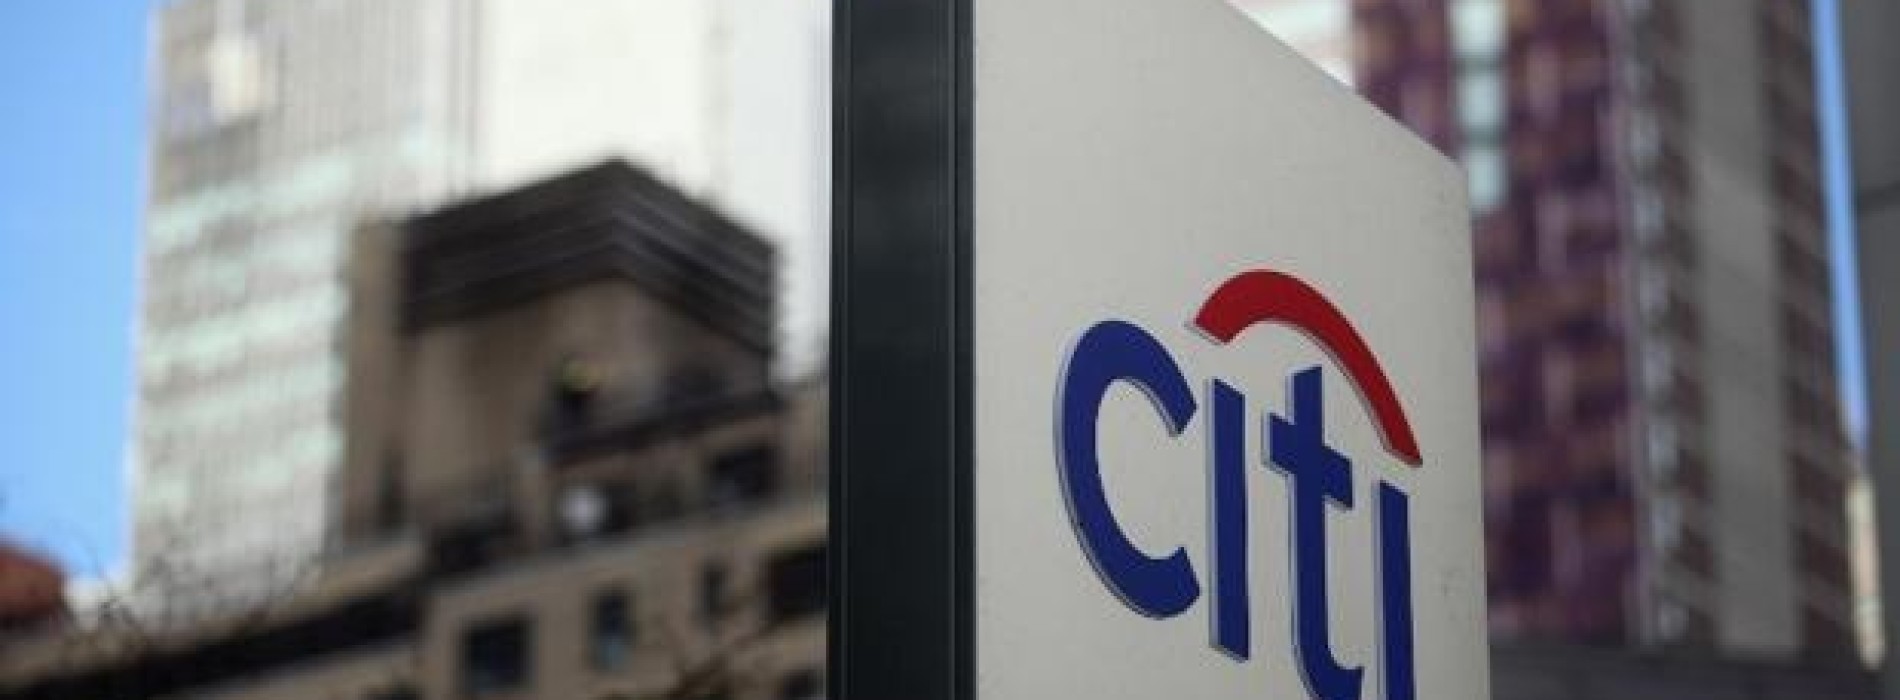 Citigroup poprawia wyniki i opuszcza 12 krajów